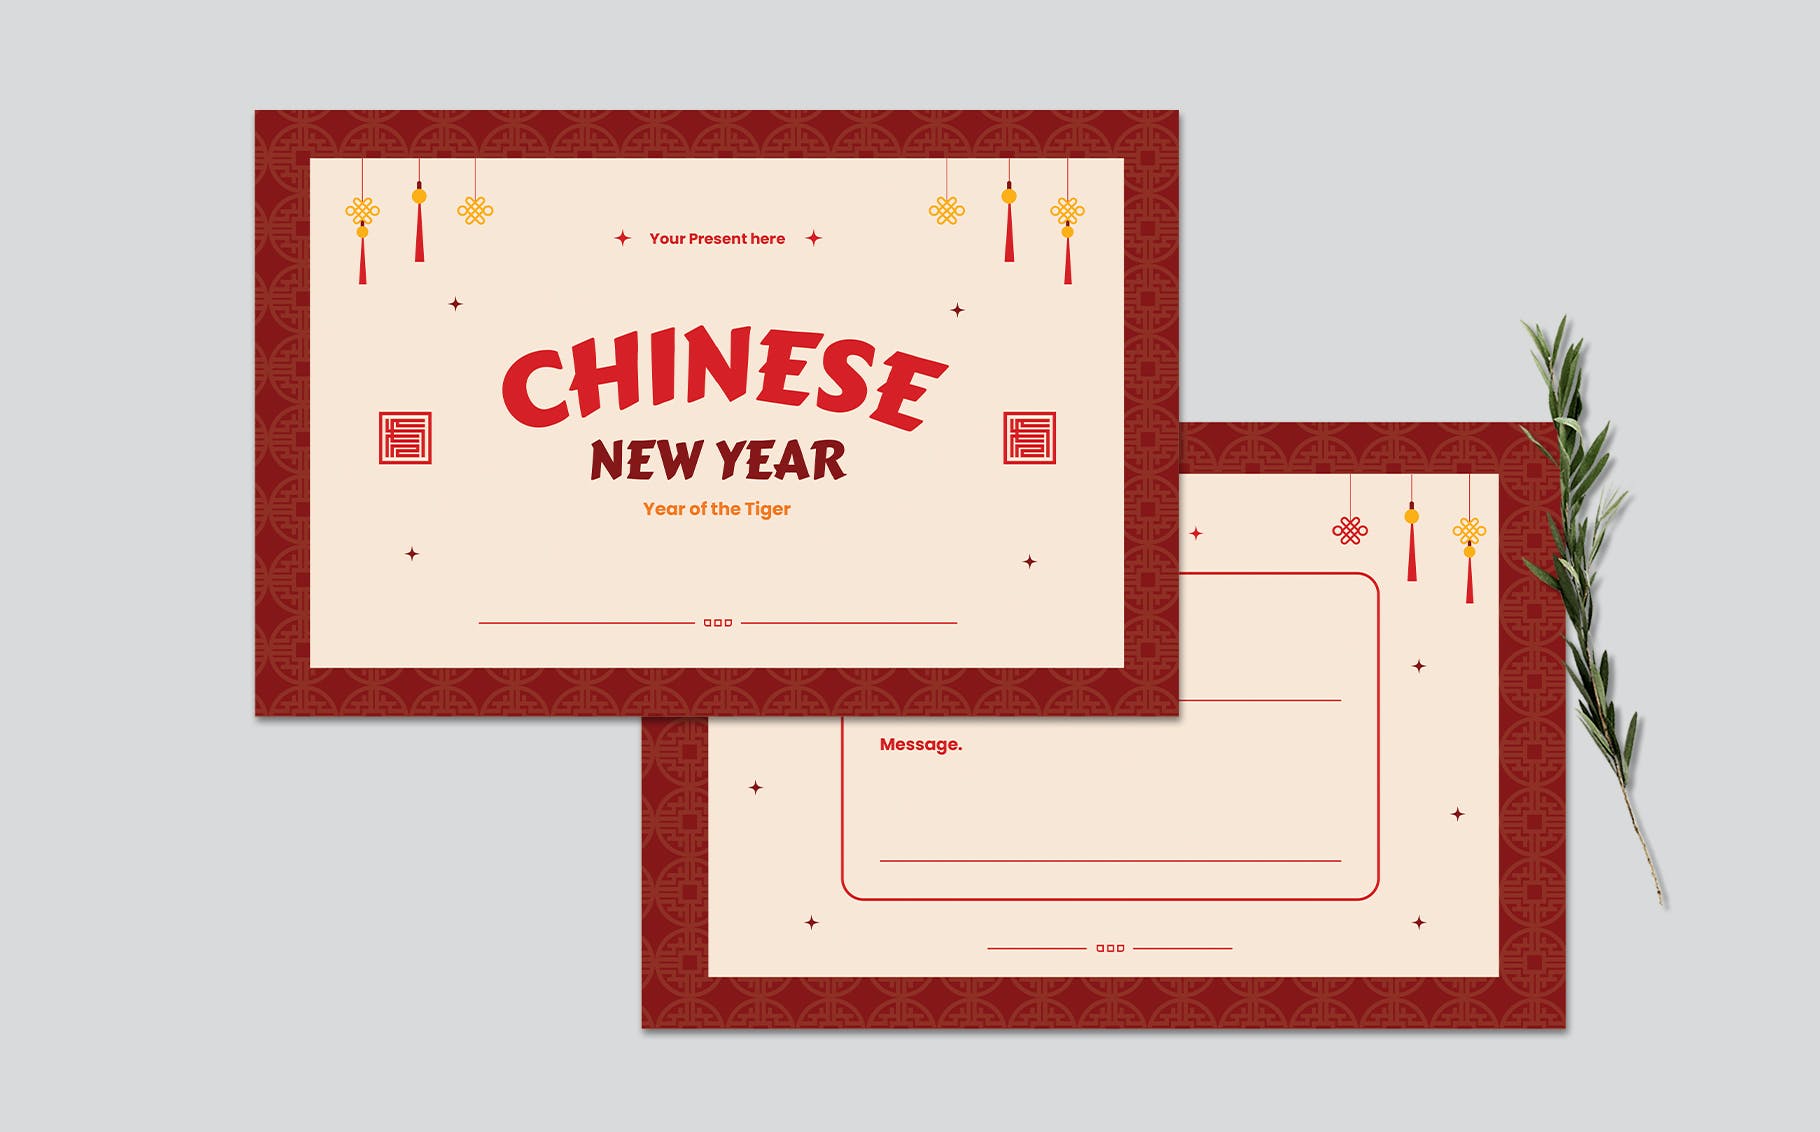 中国新年祝福贺卡设计模板 Chinese New Year Greeting Card Template 设计素材 第2张